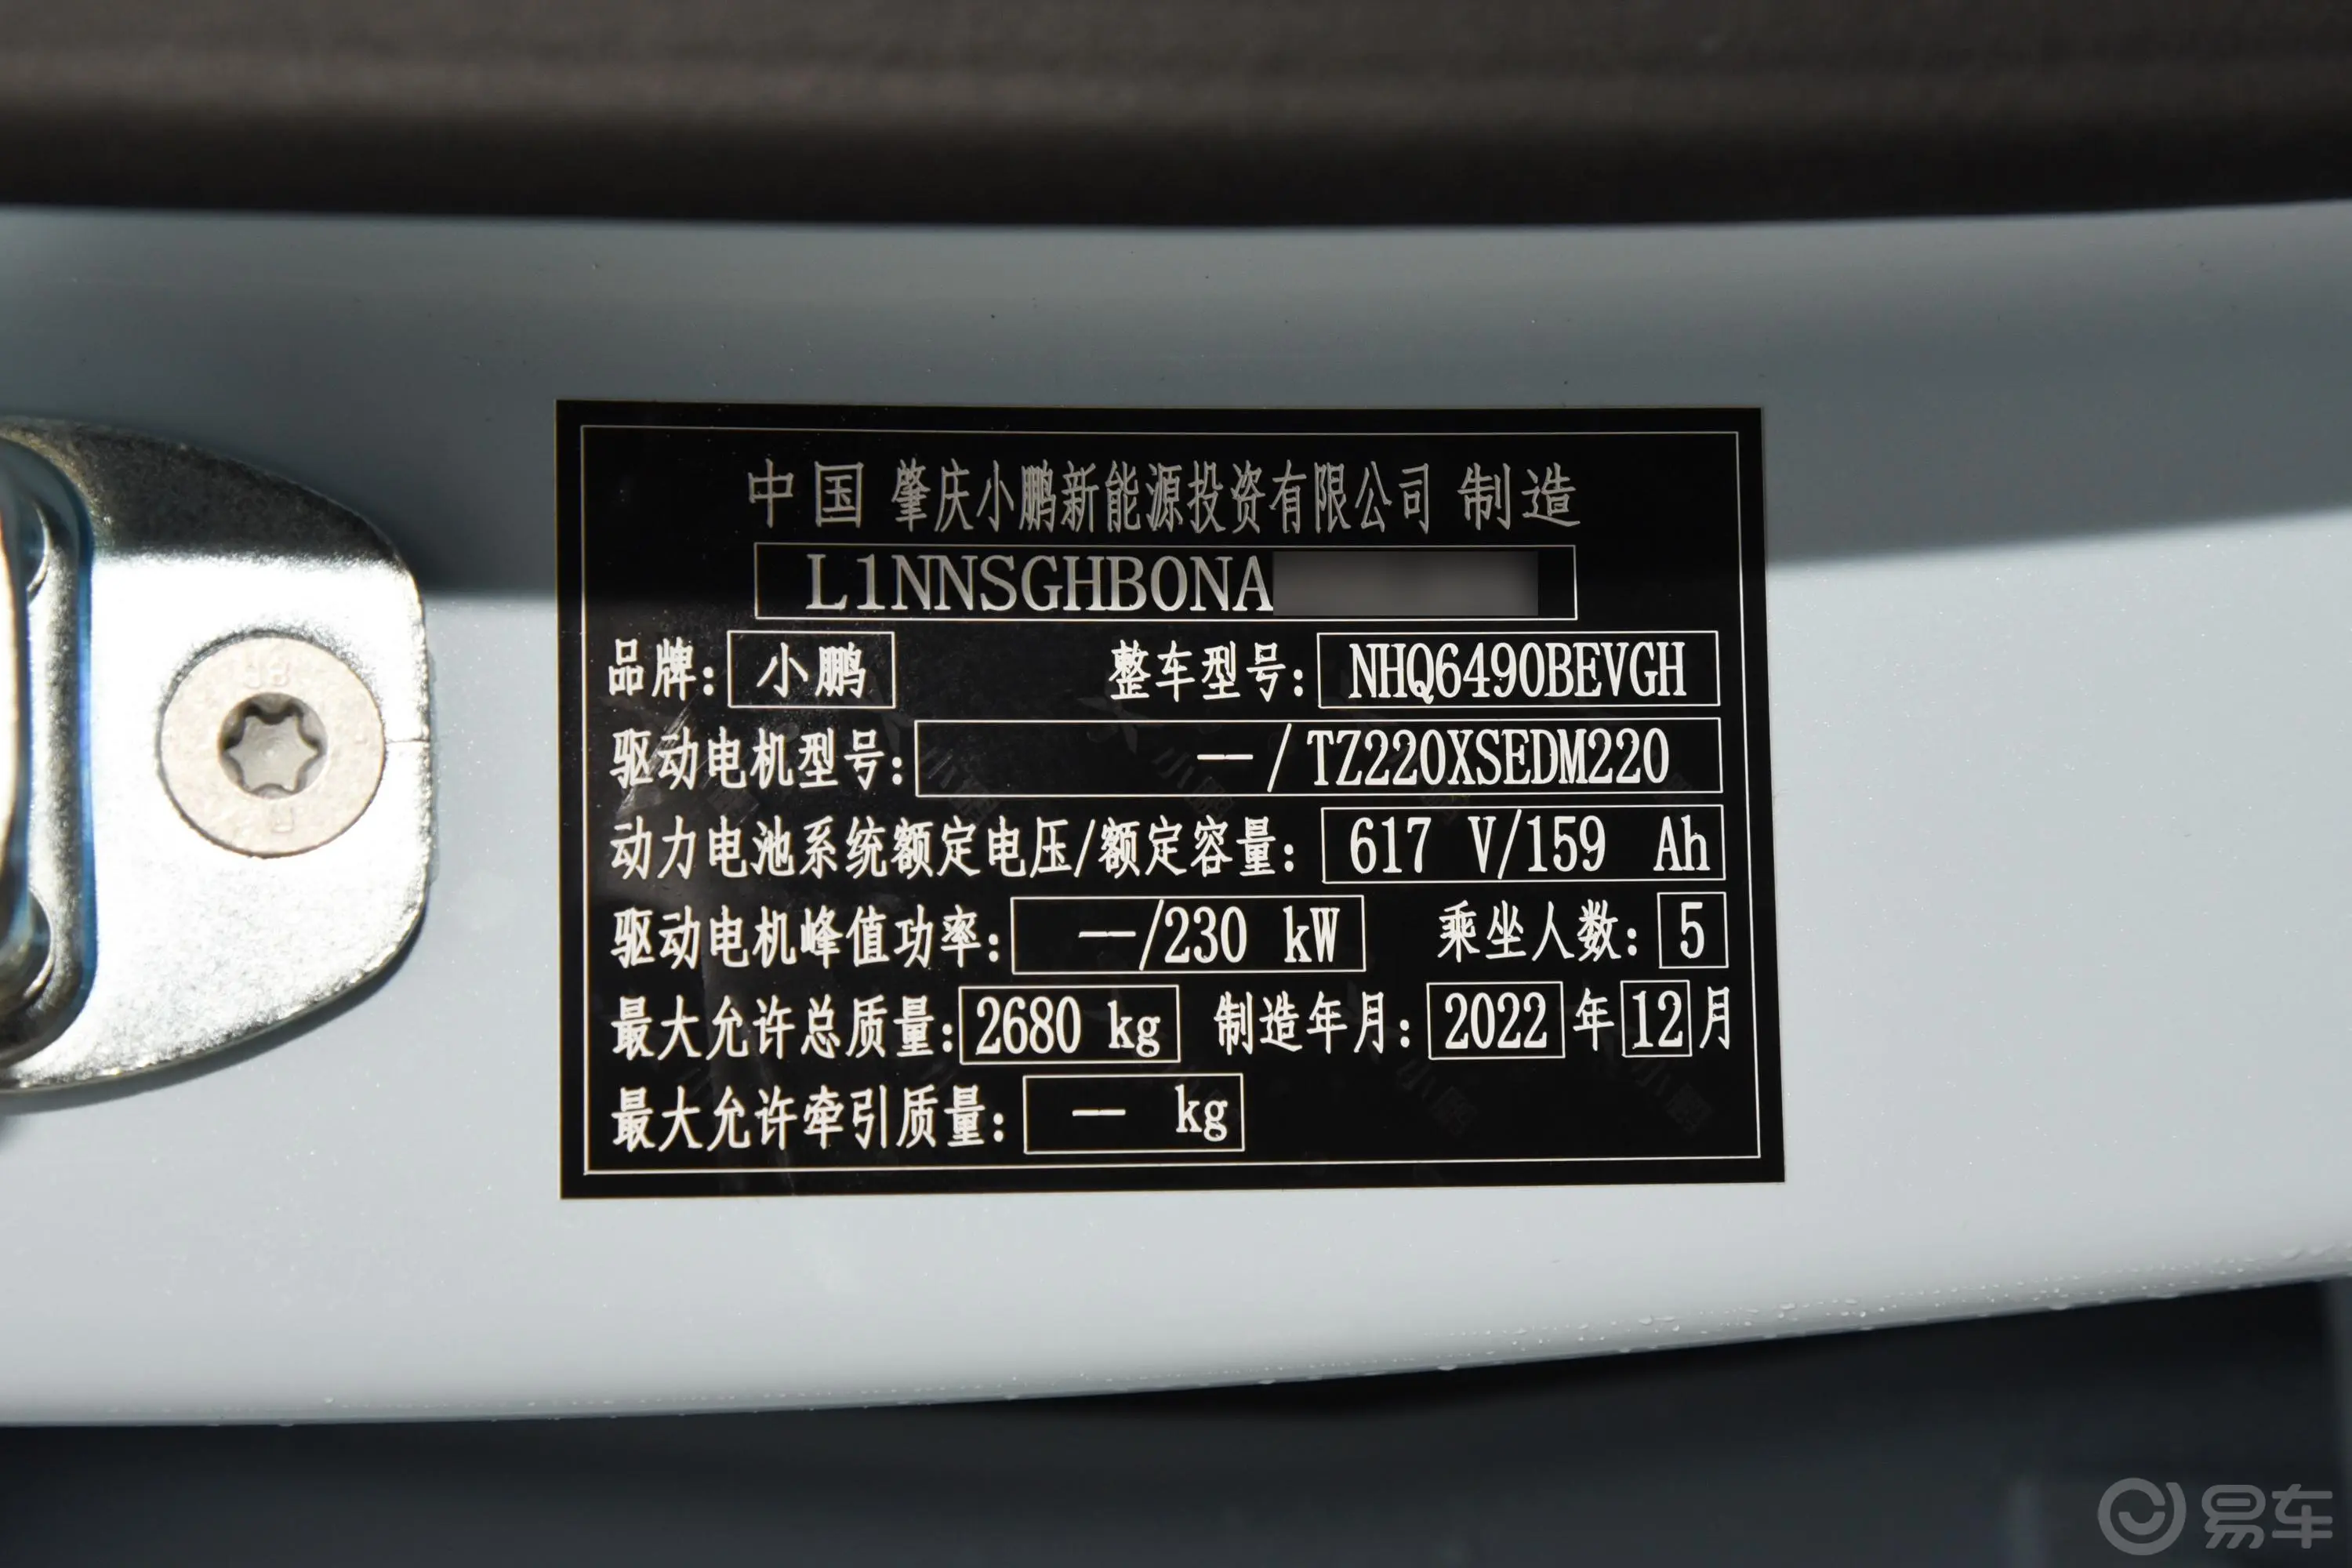 小鹏G9702 Max车辆信息铭牌